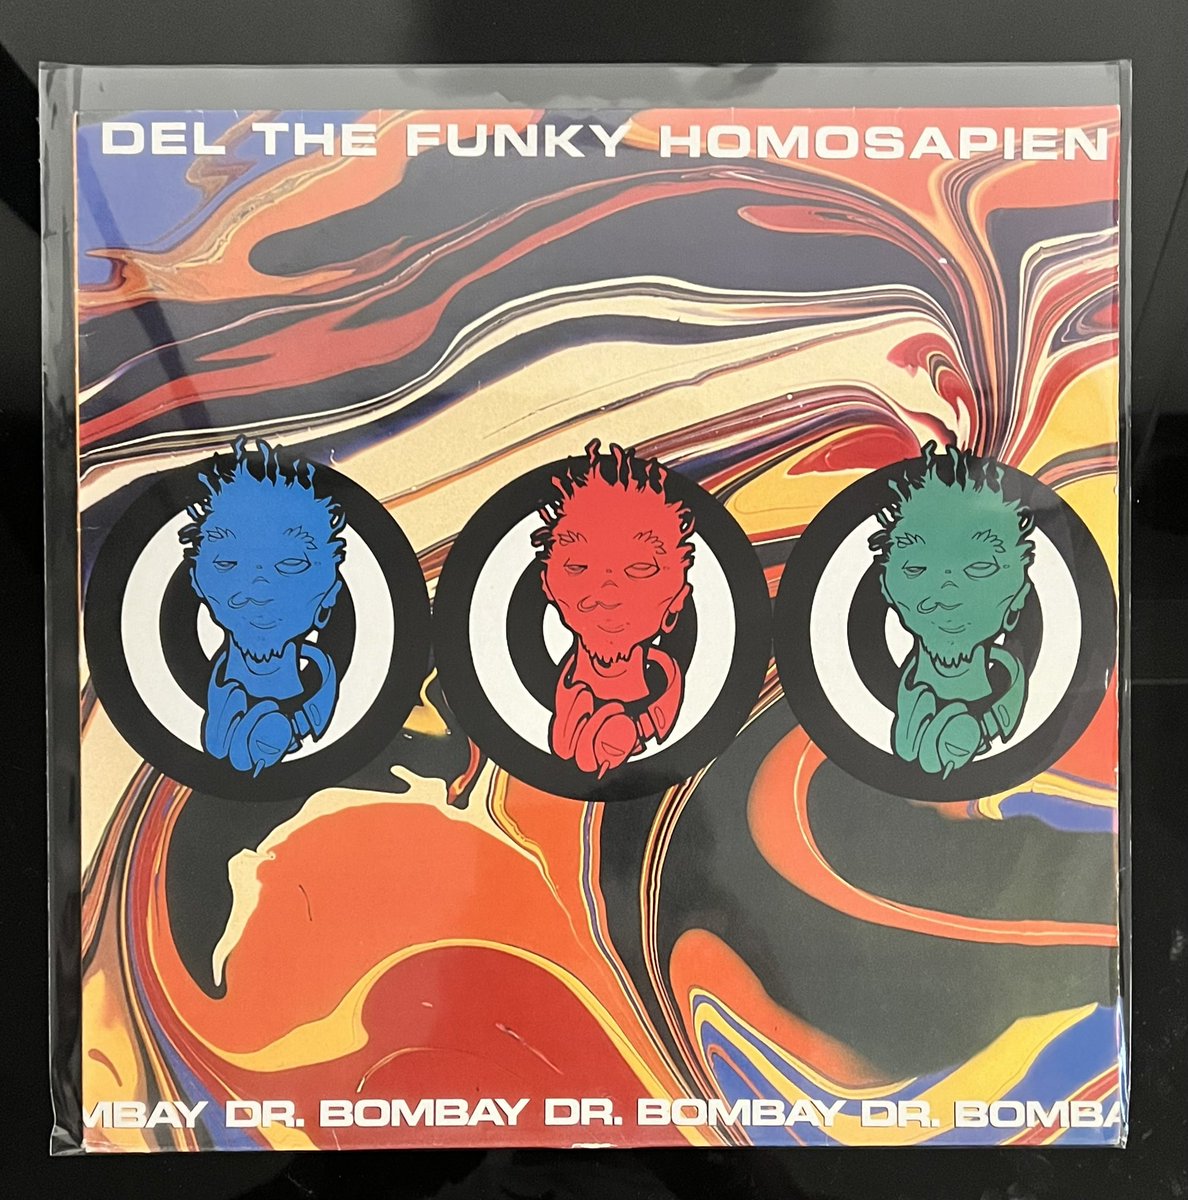 Del The Funky Homosapien
“Dr. Bombay”
1992 Original 12” U.S Press